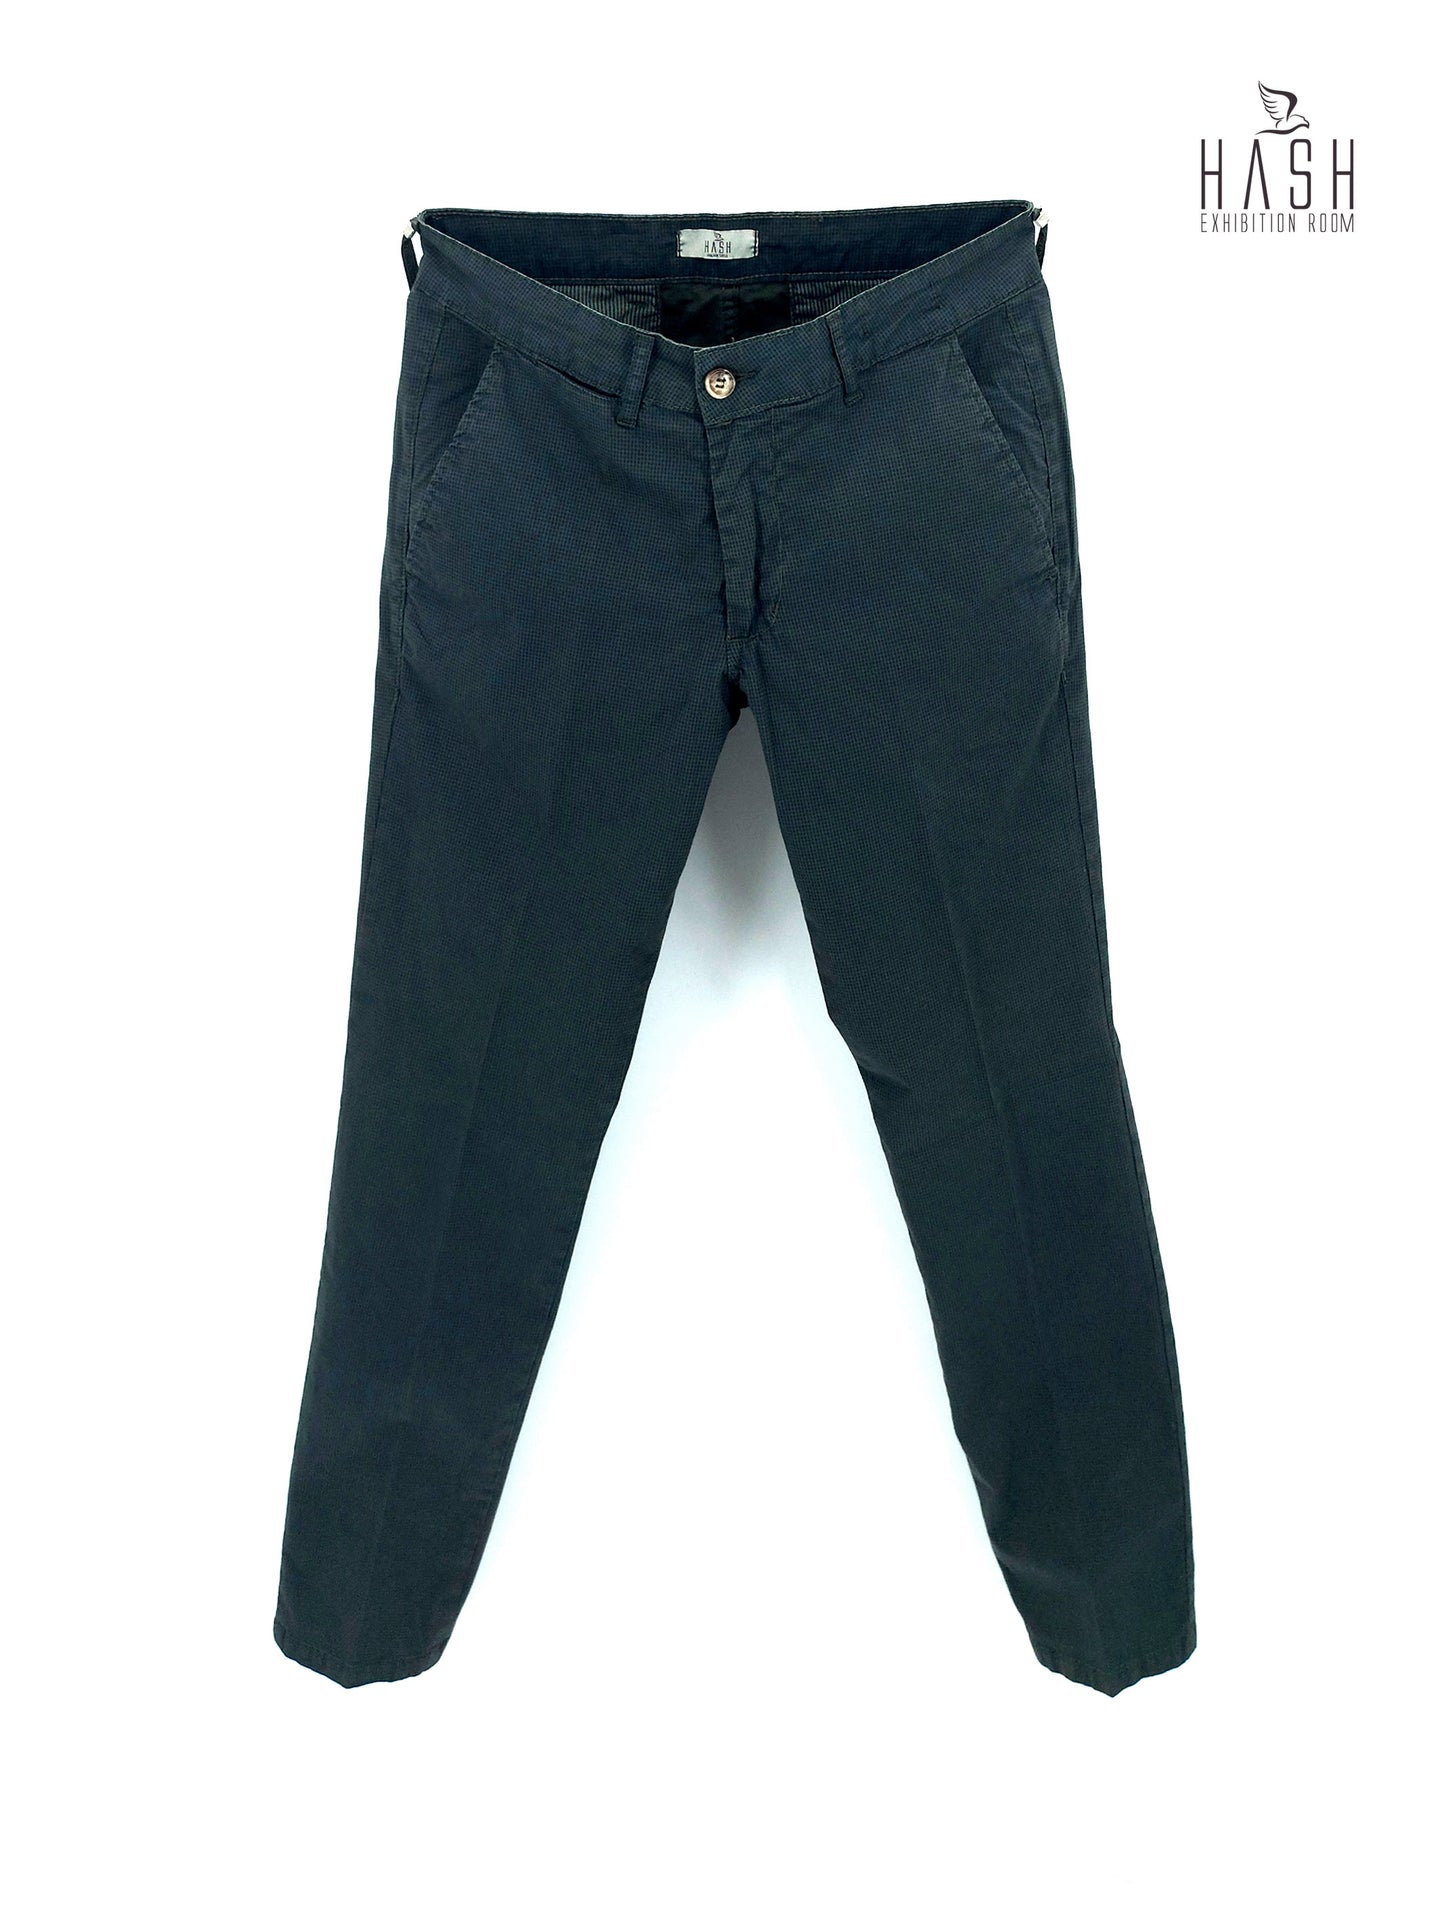 Pantalone Verde Modello Chinos in Cotone Microfantasia Geometrica Blu